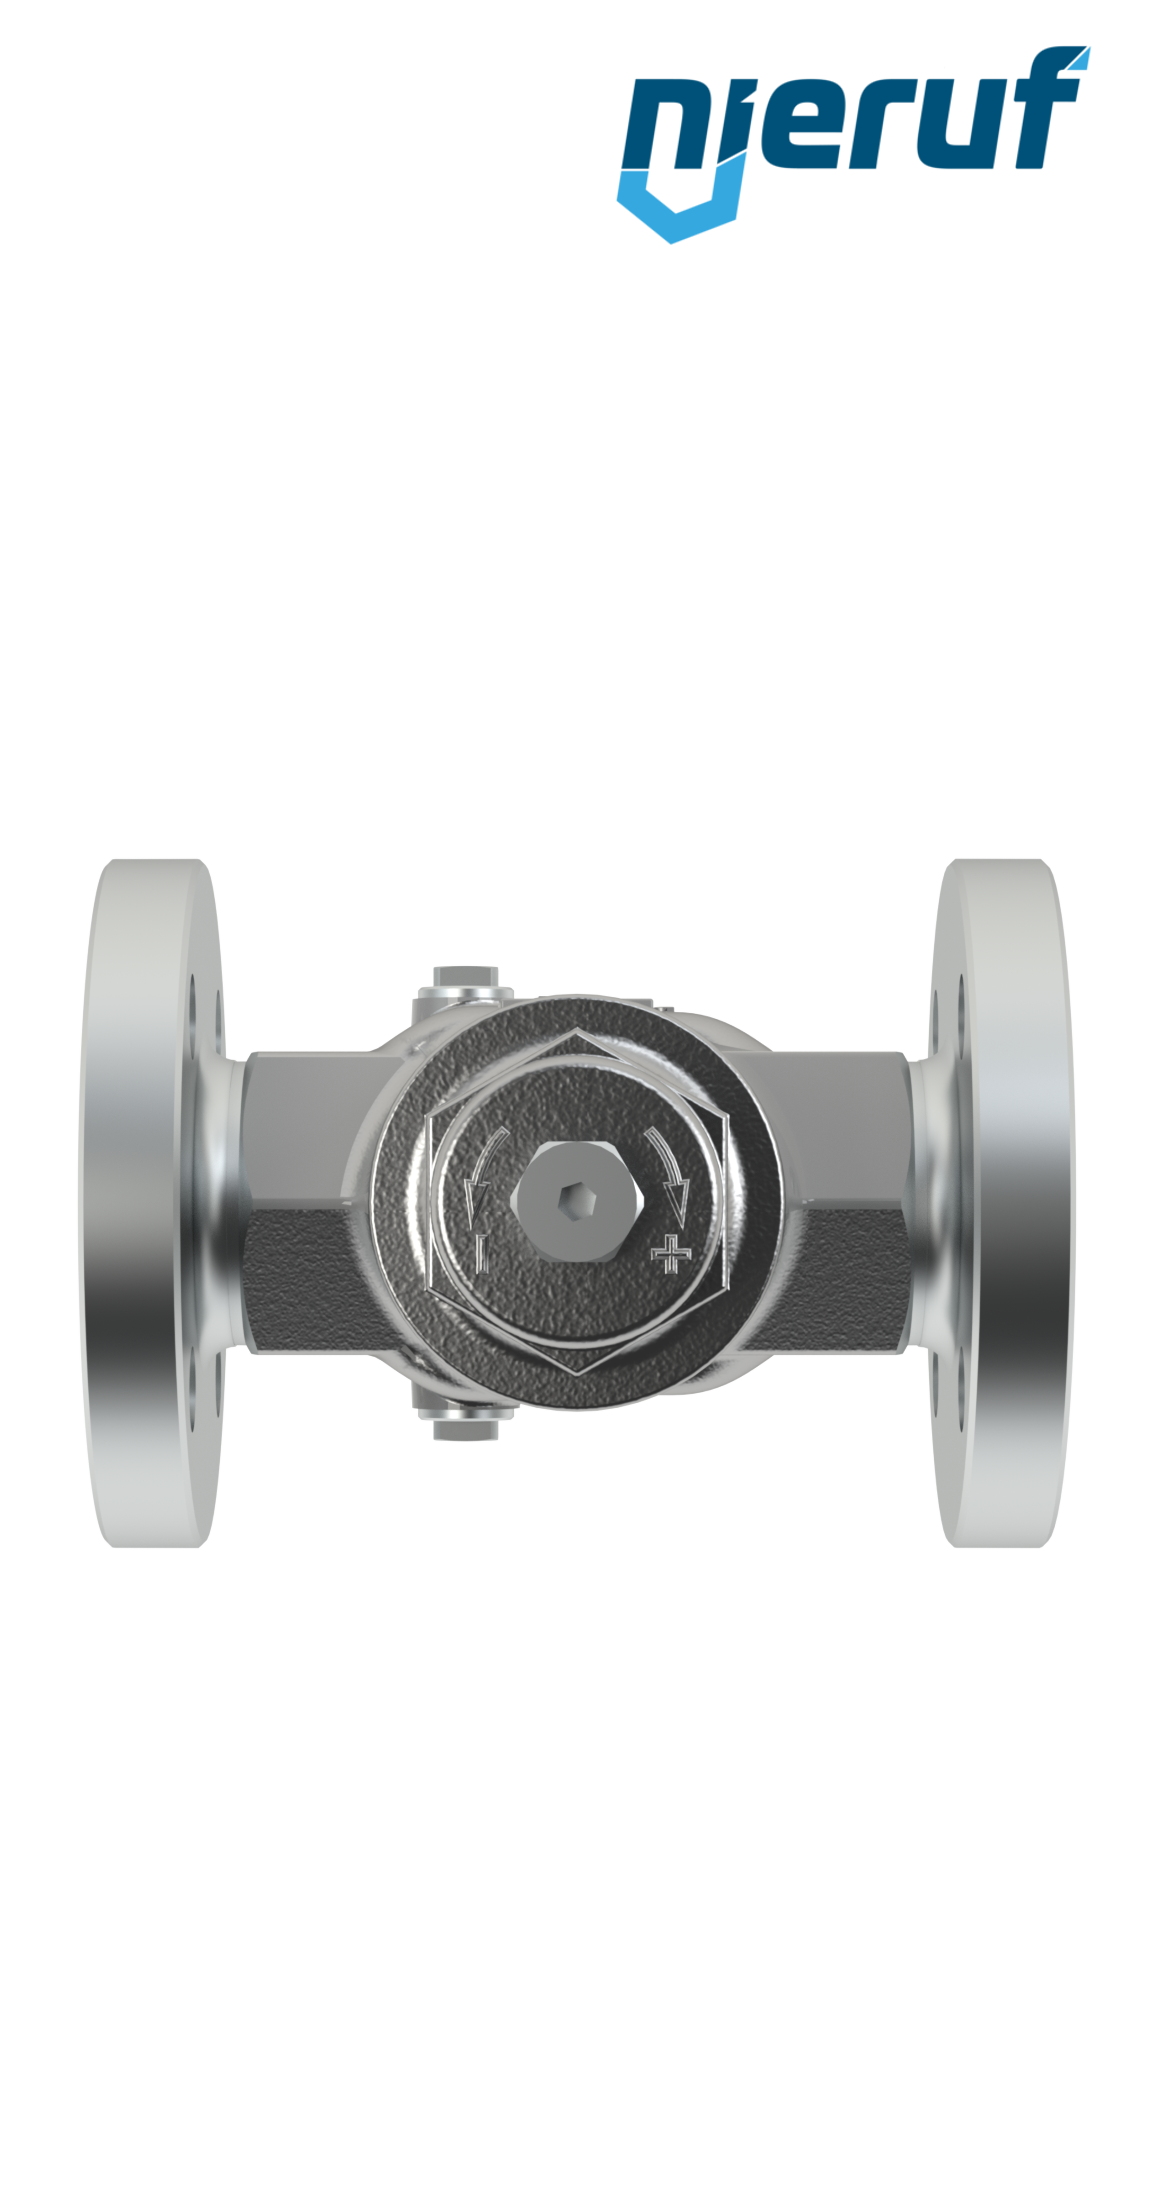 Piston-pressure reducing valve DN25 DM11 flange ANSI 150 stainless steel FPM / FKM 2.0 - 20.0 bar